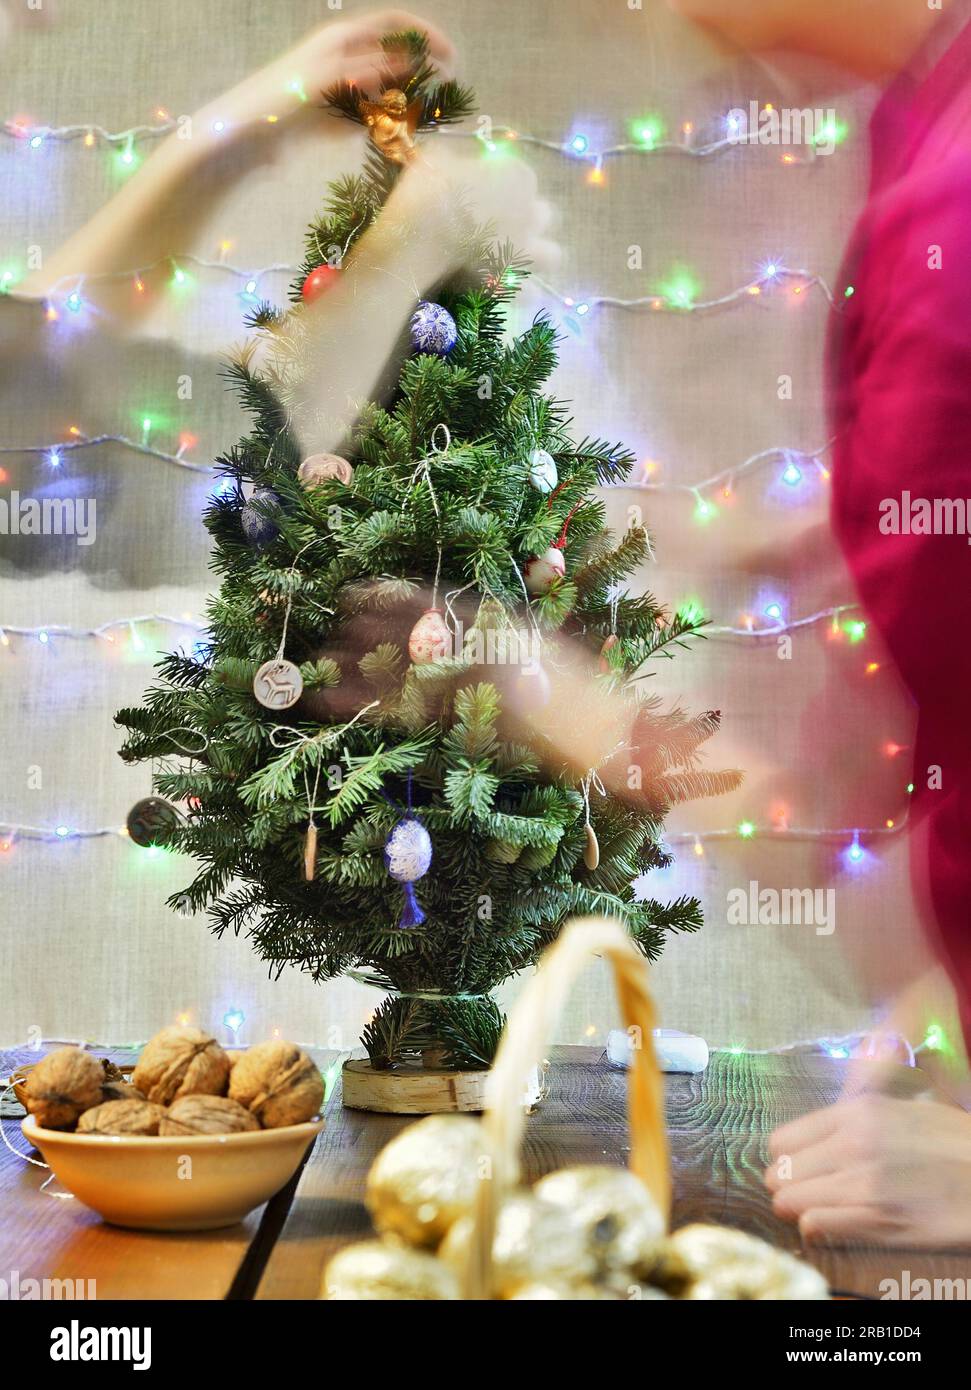 Festlich dekorierter grüner Weihnachtsbaum mit brennenden Kerzen und verschwommener Beleuchtung der Hände Stockfoto